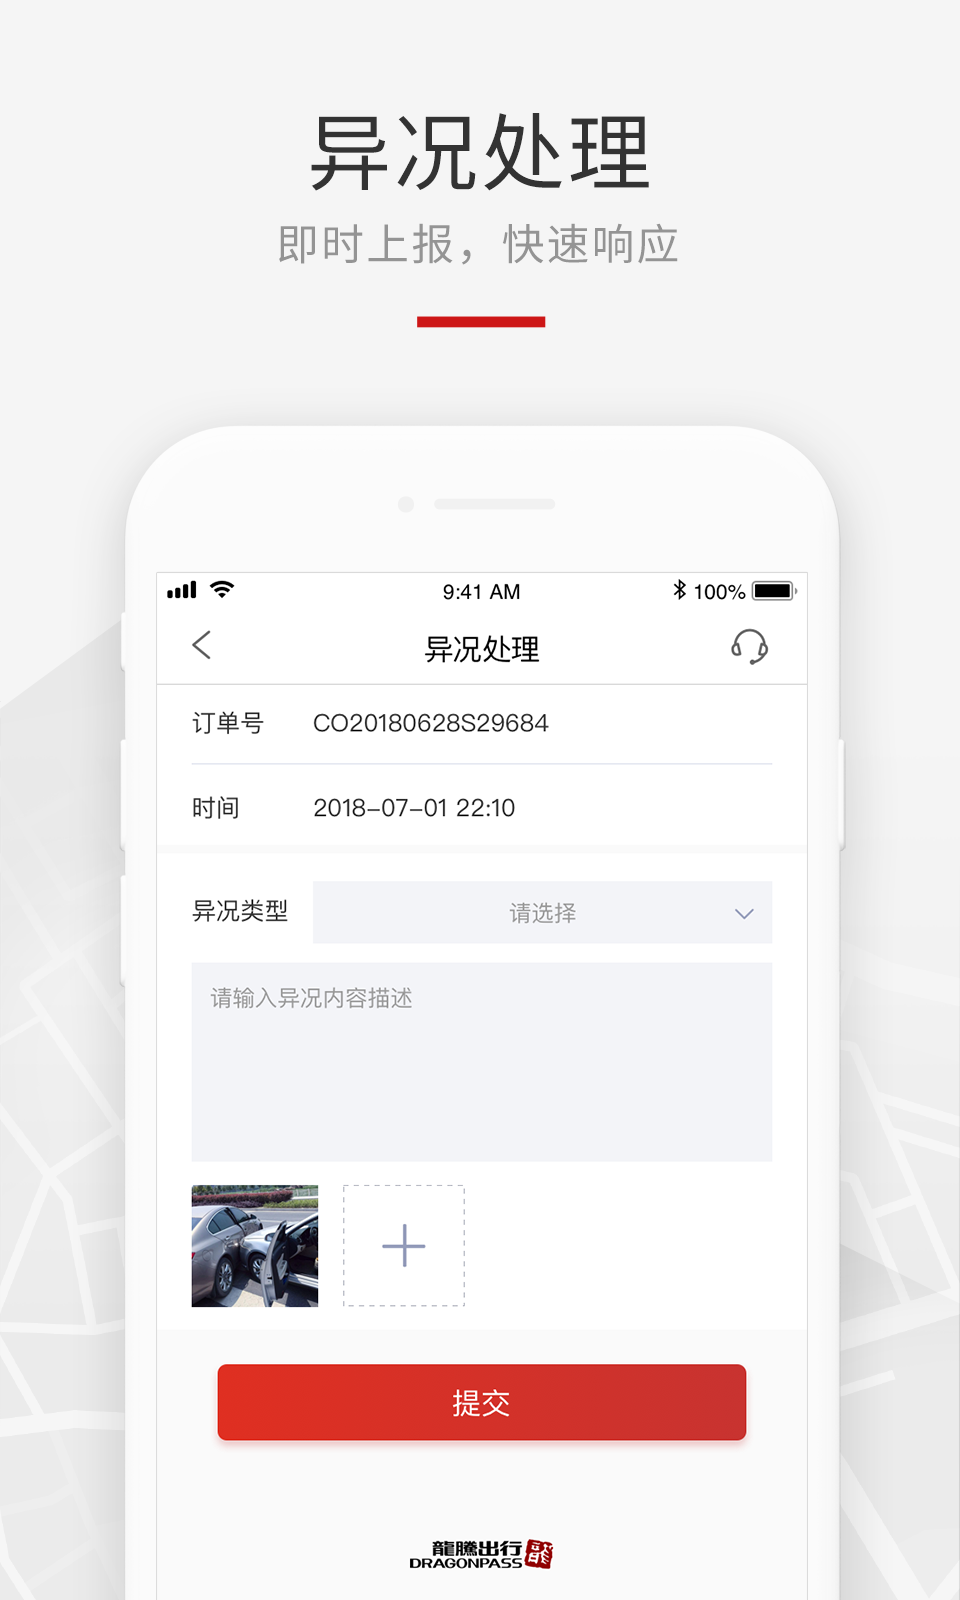 龙腾礼宾车出行司机端App(2)